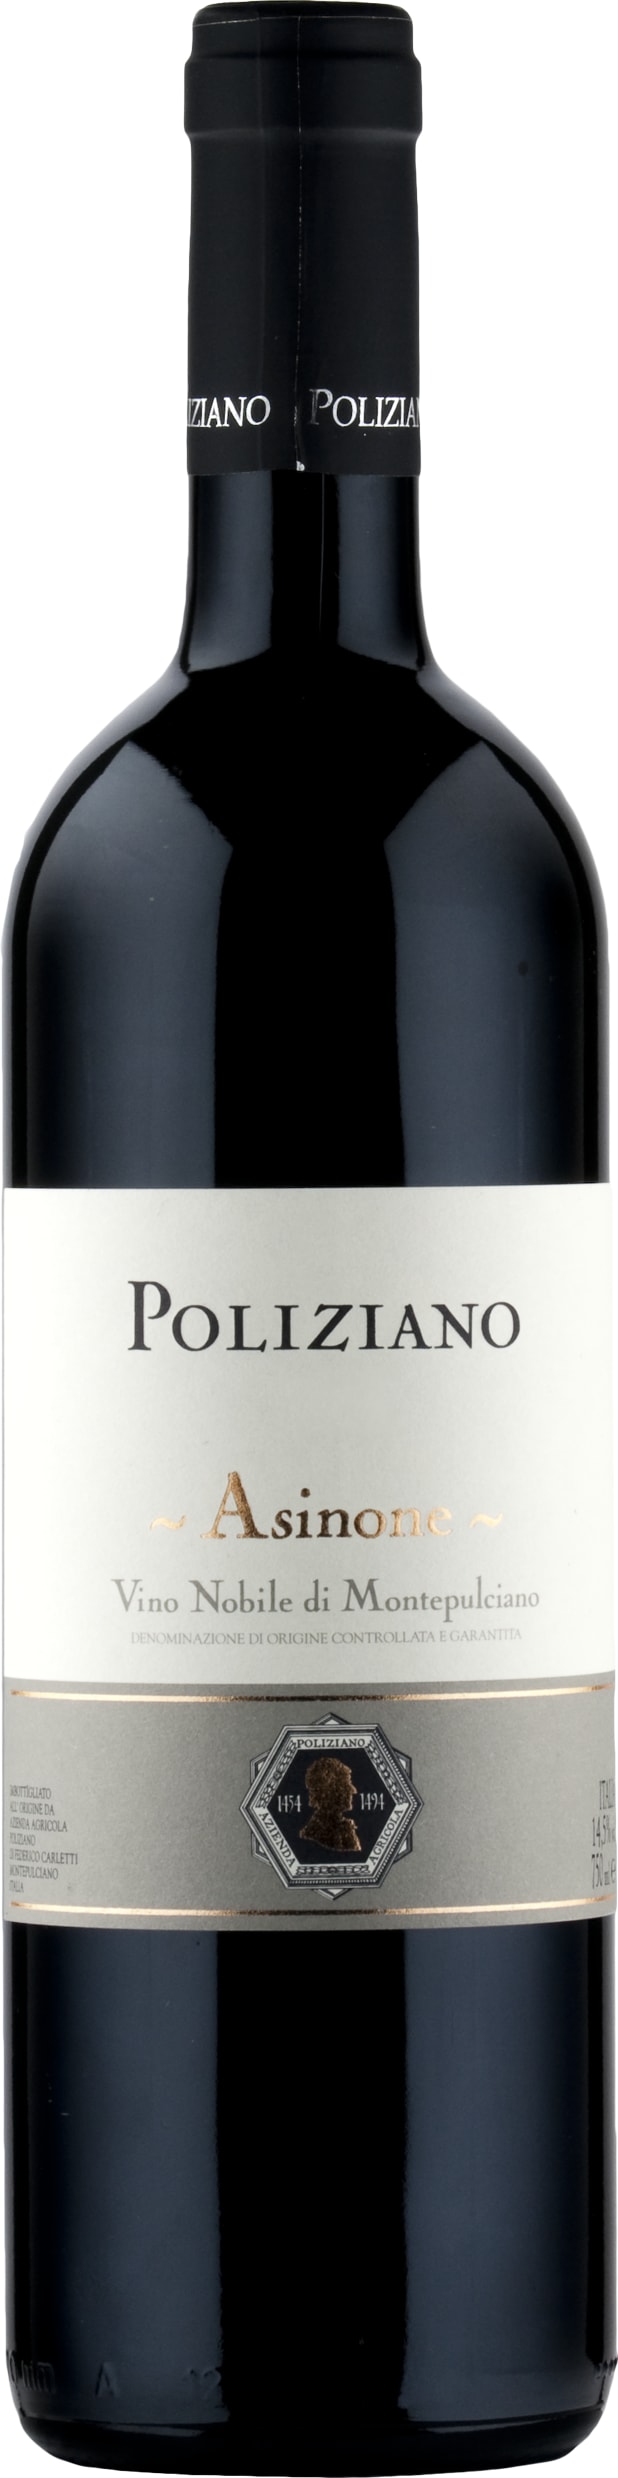 Poliziano Asinone Vino Nobile di Montepulciano DOCG 2020 75cl - Buy Poliziano Wines from GREAT WINES DIRECT wine shop